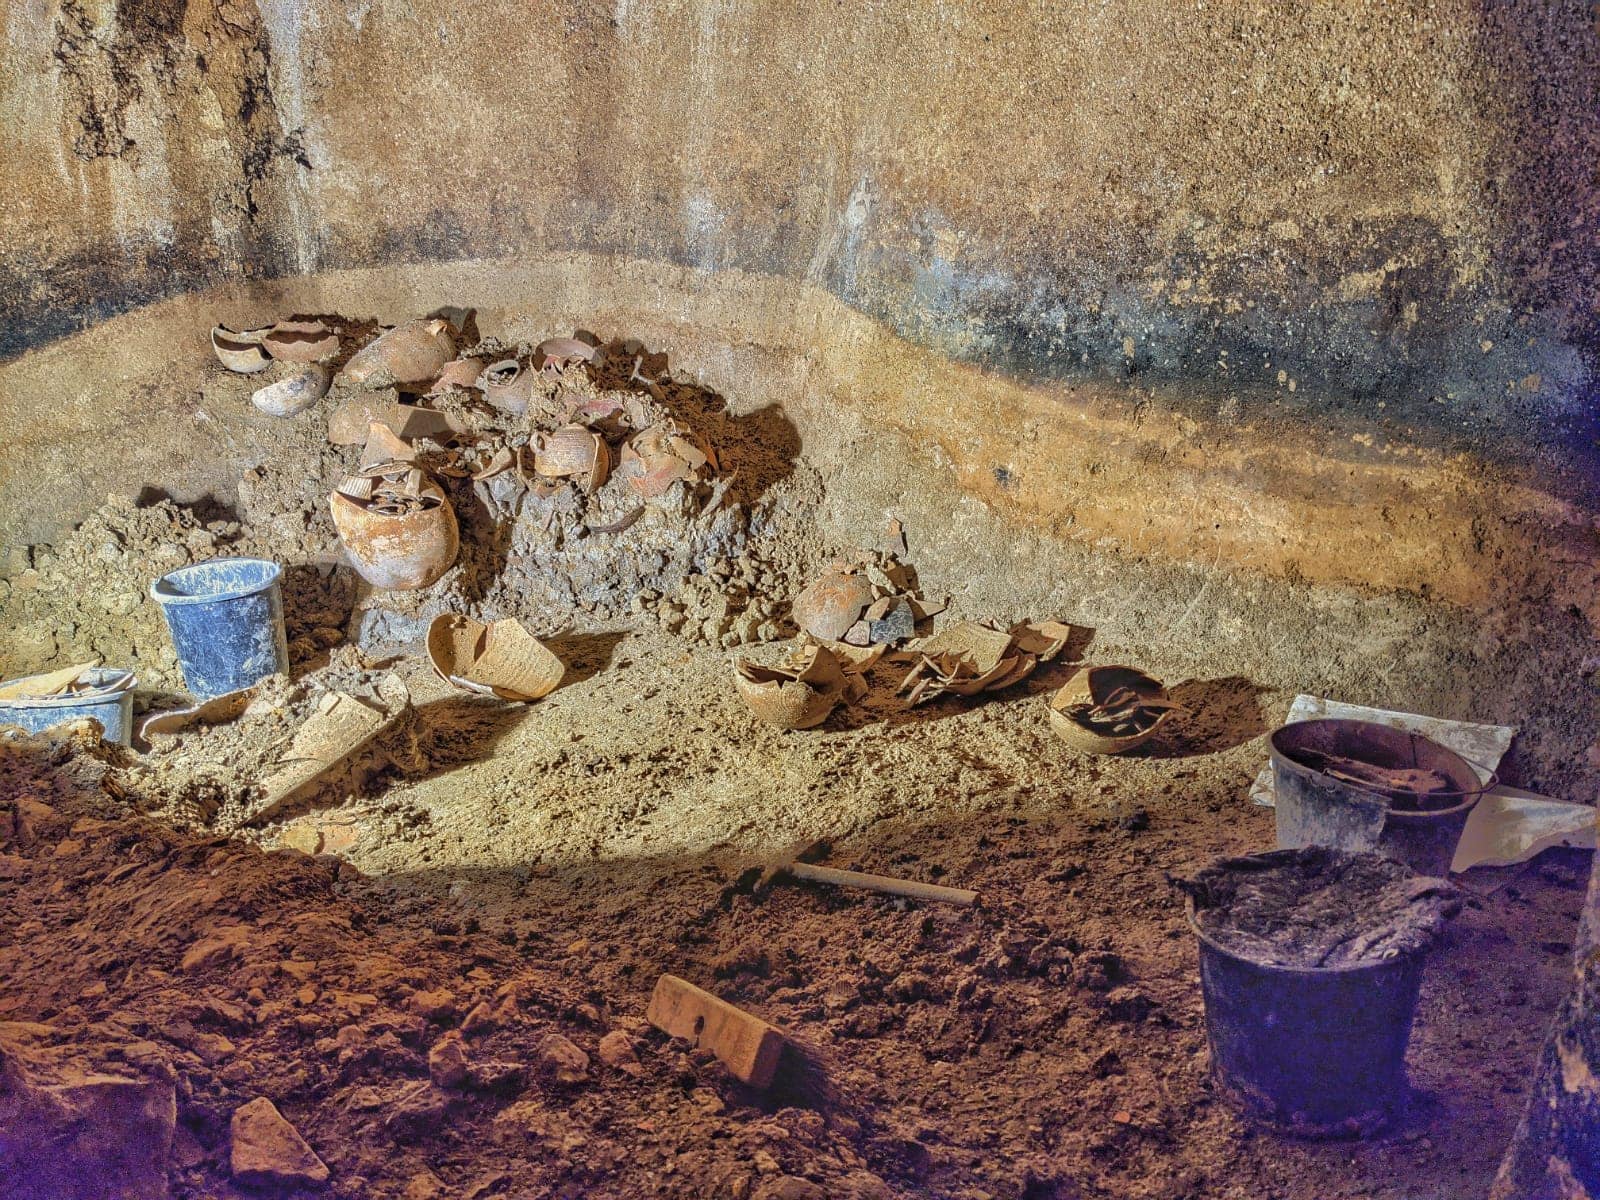 מטמון של כלים מתקופת בית שני, שהתגלה במקווה מים ביישוב העתיק כפר מור, כיום שכונה בבית אל (צילום: יבגני אהרונוביץ&#039;)